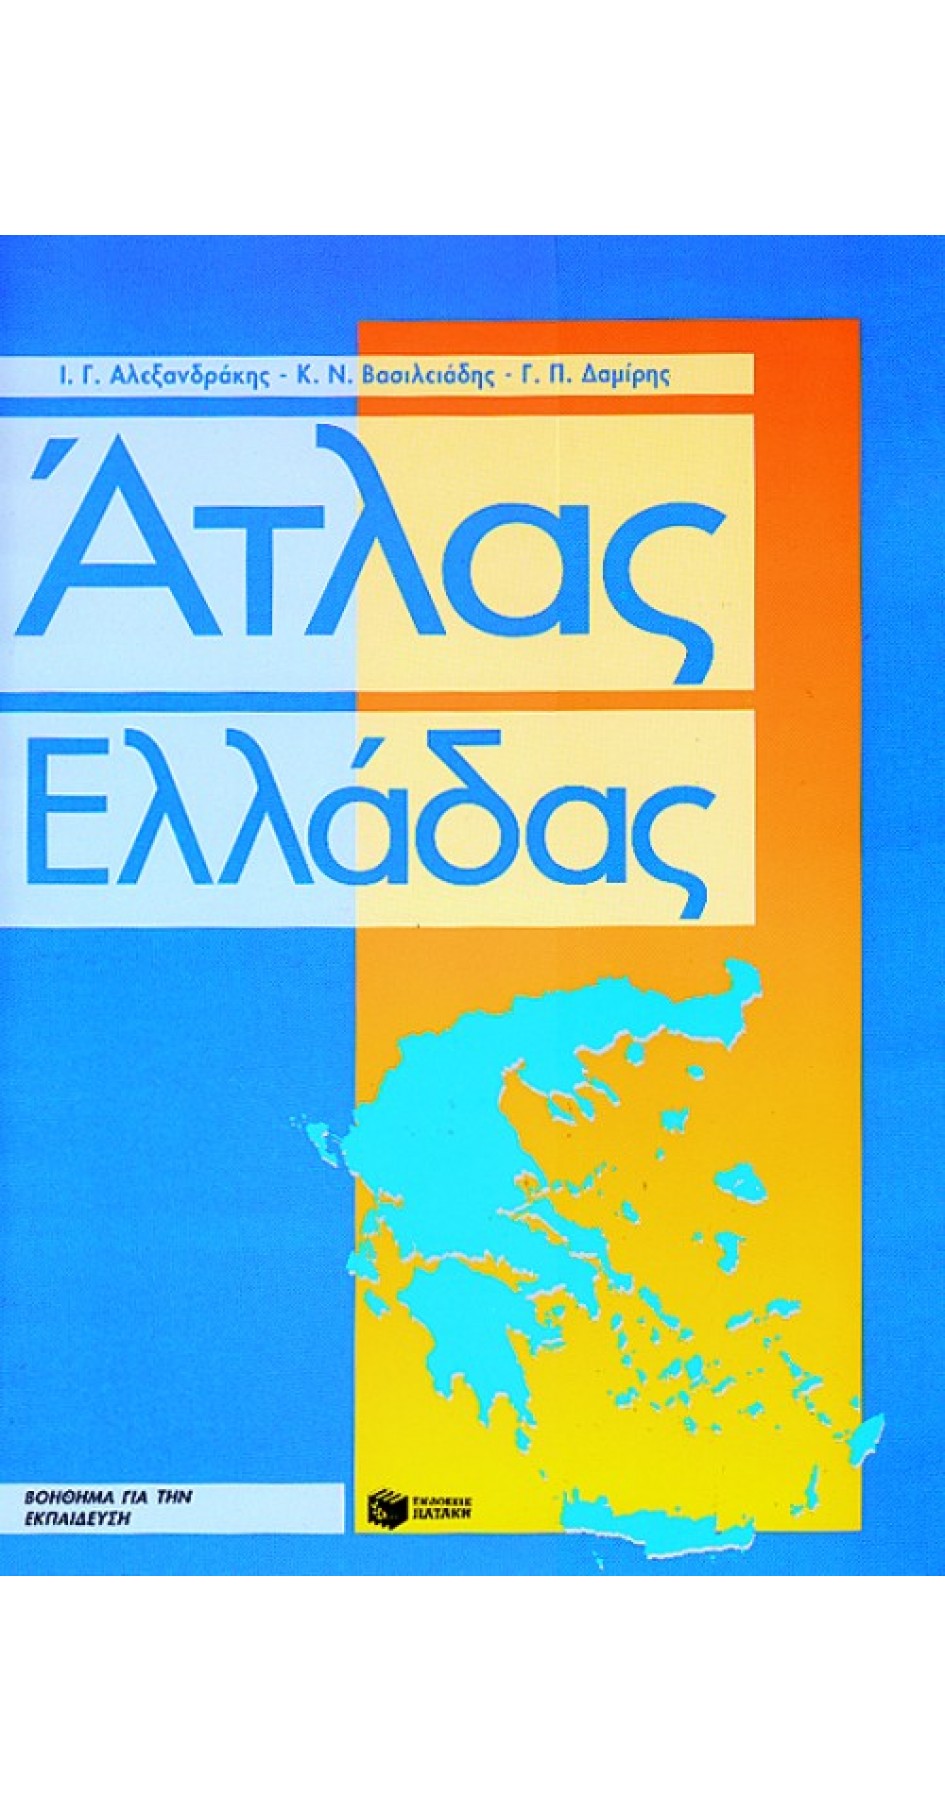 Άτλας Ελλάδας: βοήθημα για την εκπαίδευση (book in Greek)